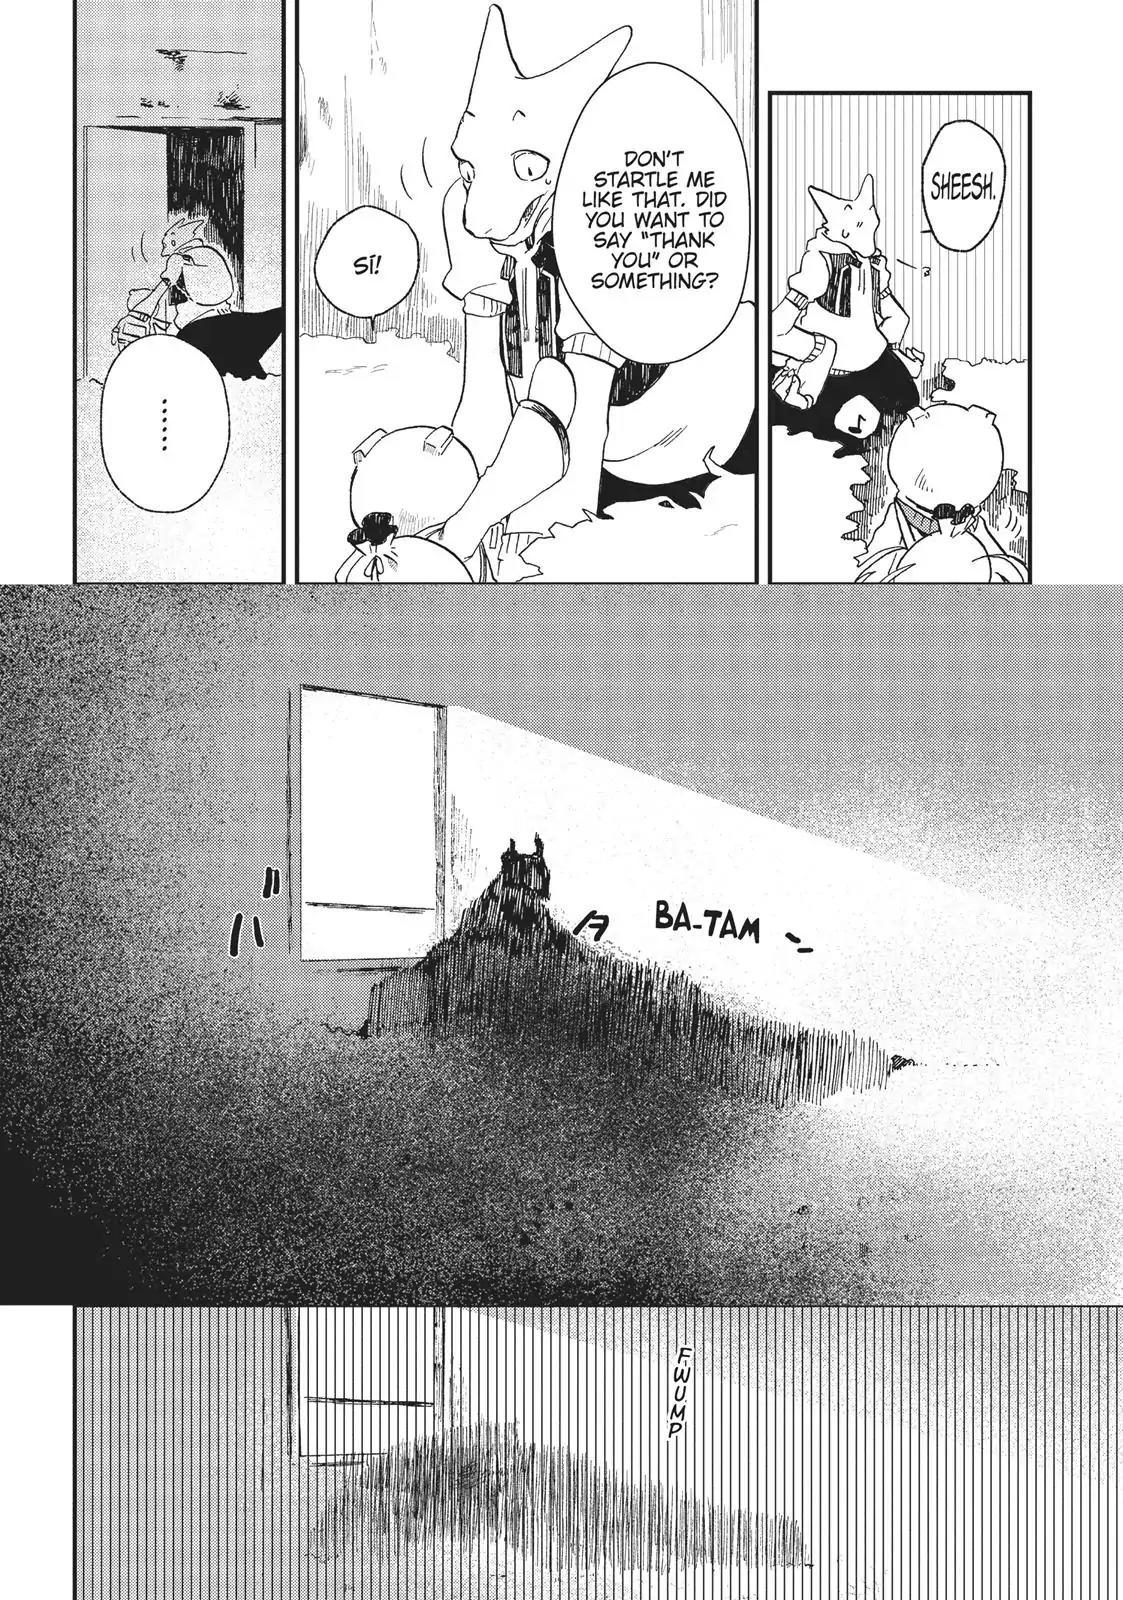 Ryuu no Nanakuni to Minashigo no Juana Vol.1 Chapter 4